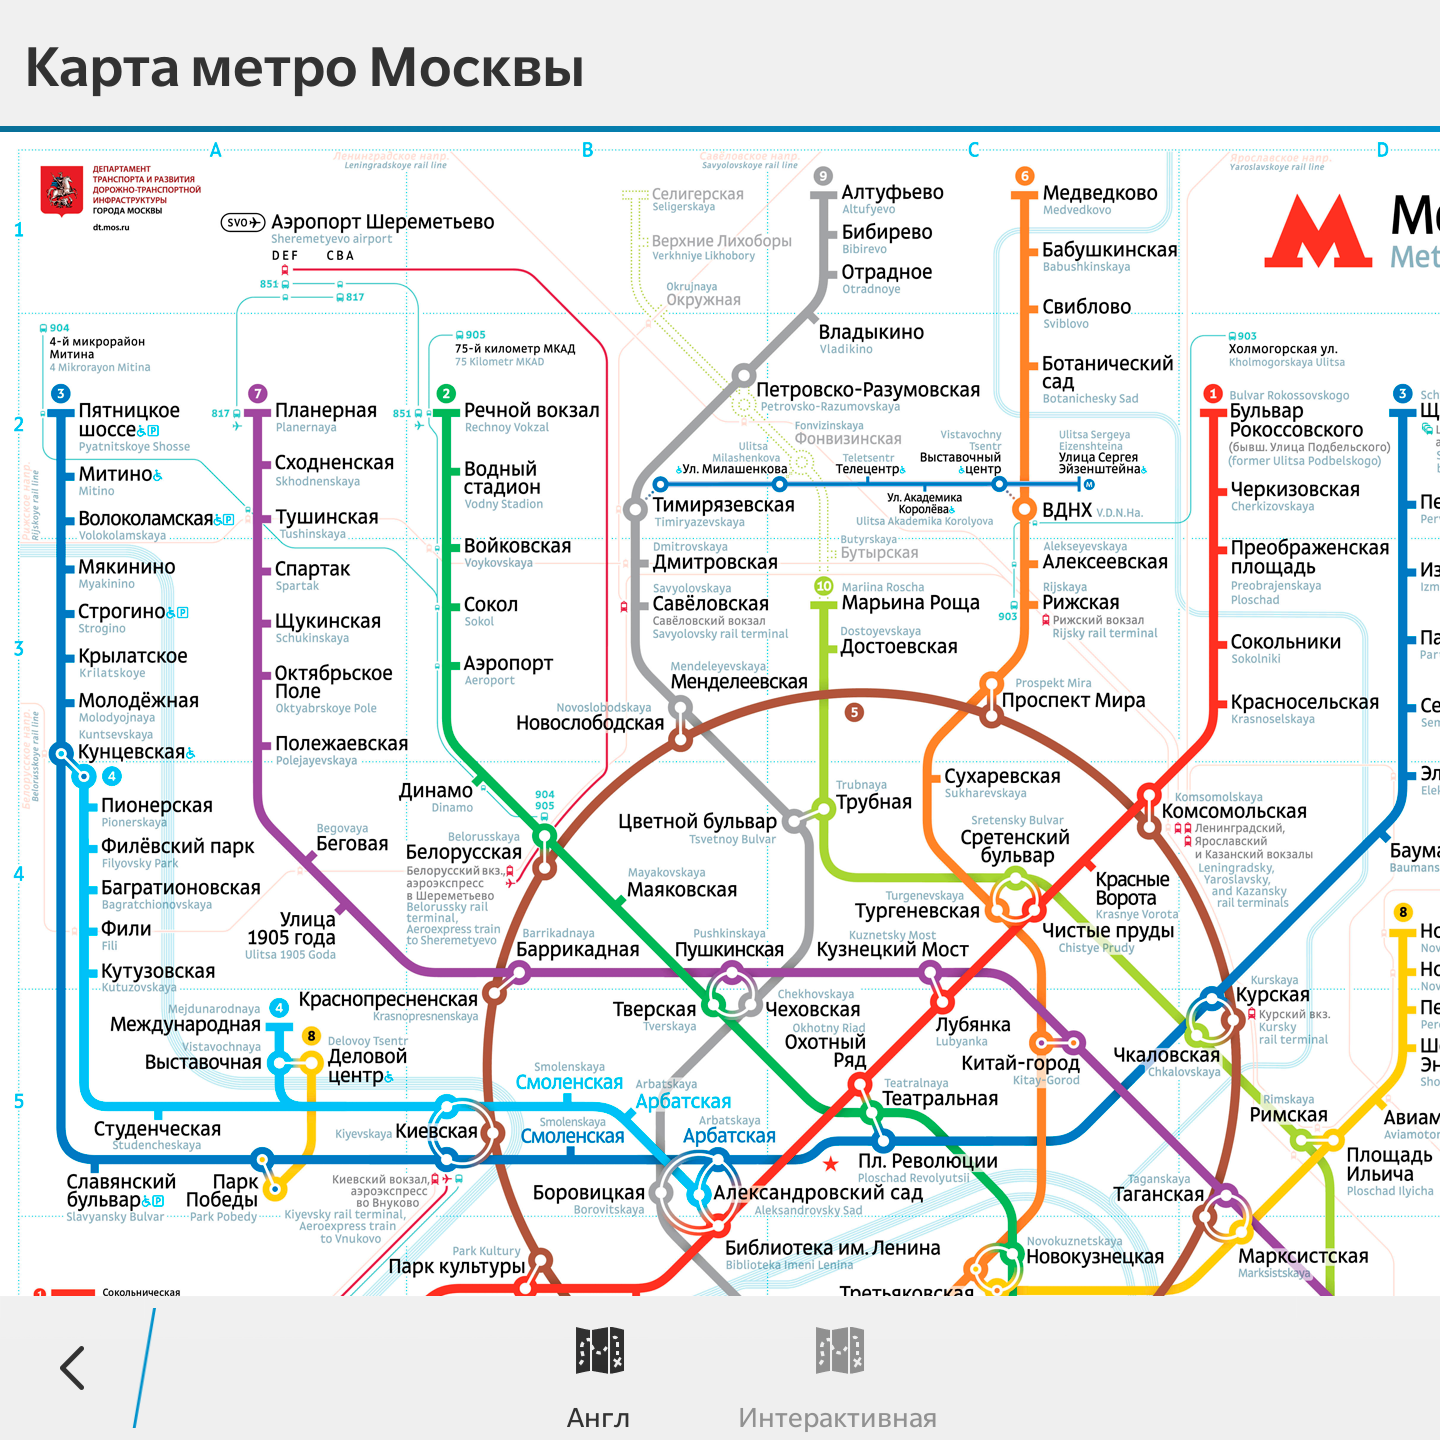 Метро северная на карте. Карта Московского метрополитена Ховрино. Метро Ховрино на карте Москвы. Метро Ховрино на карте метрополитена. Станция метро Ховрино на схеме.